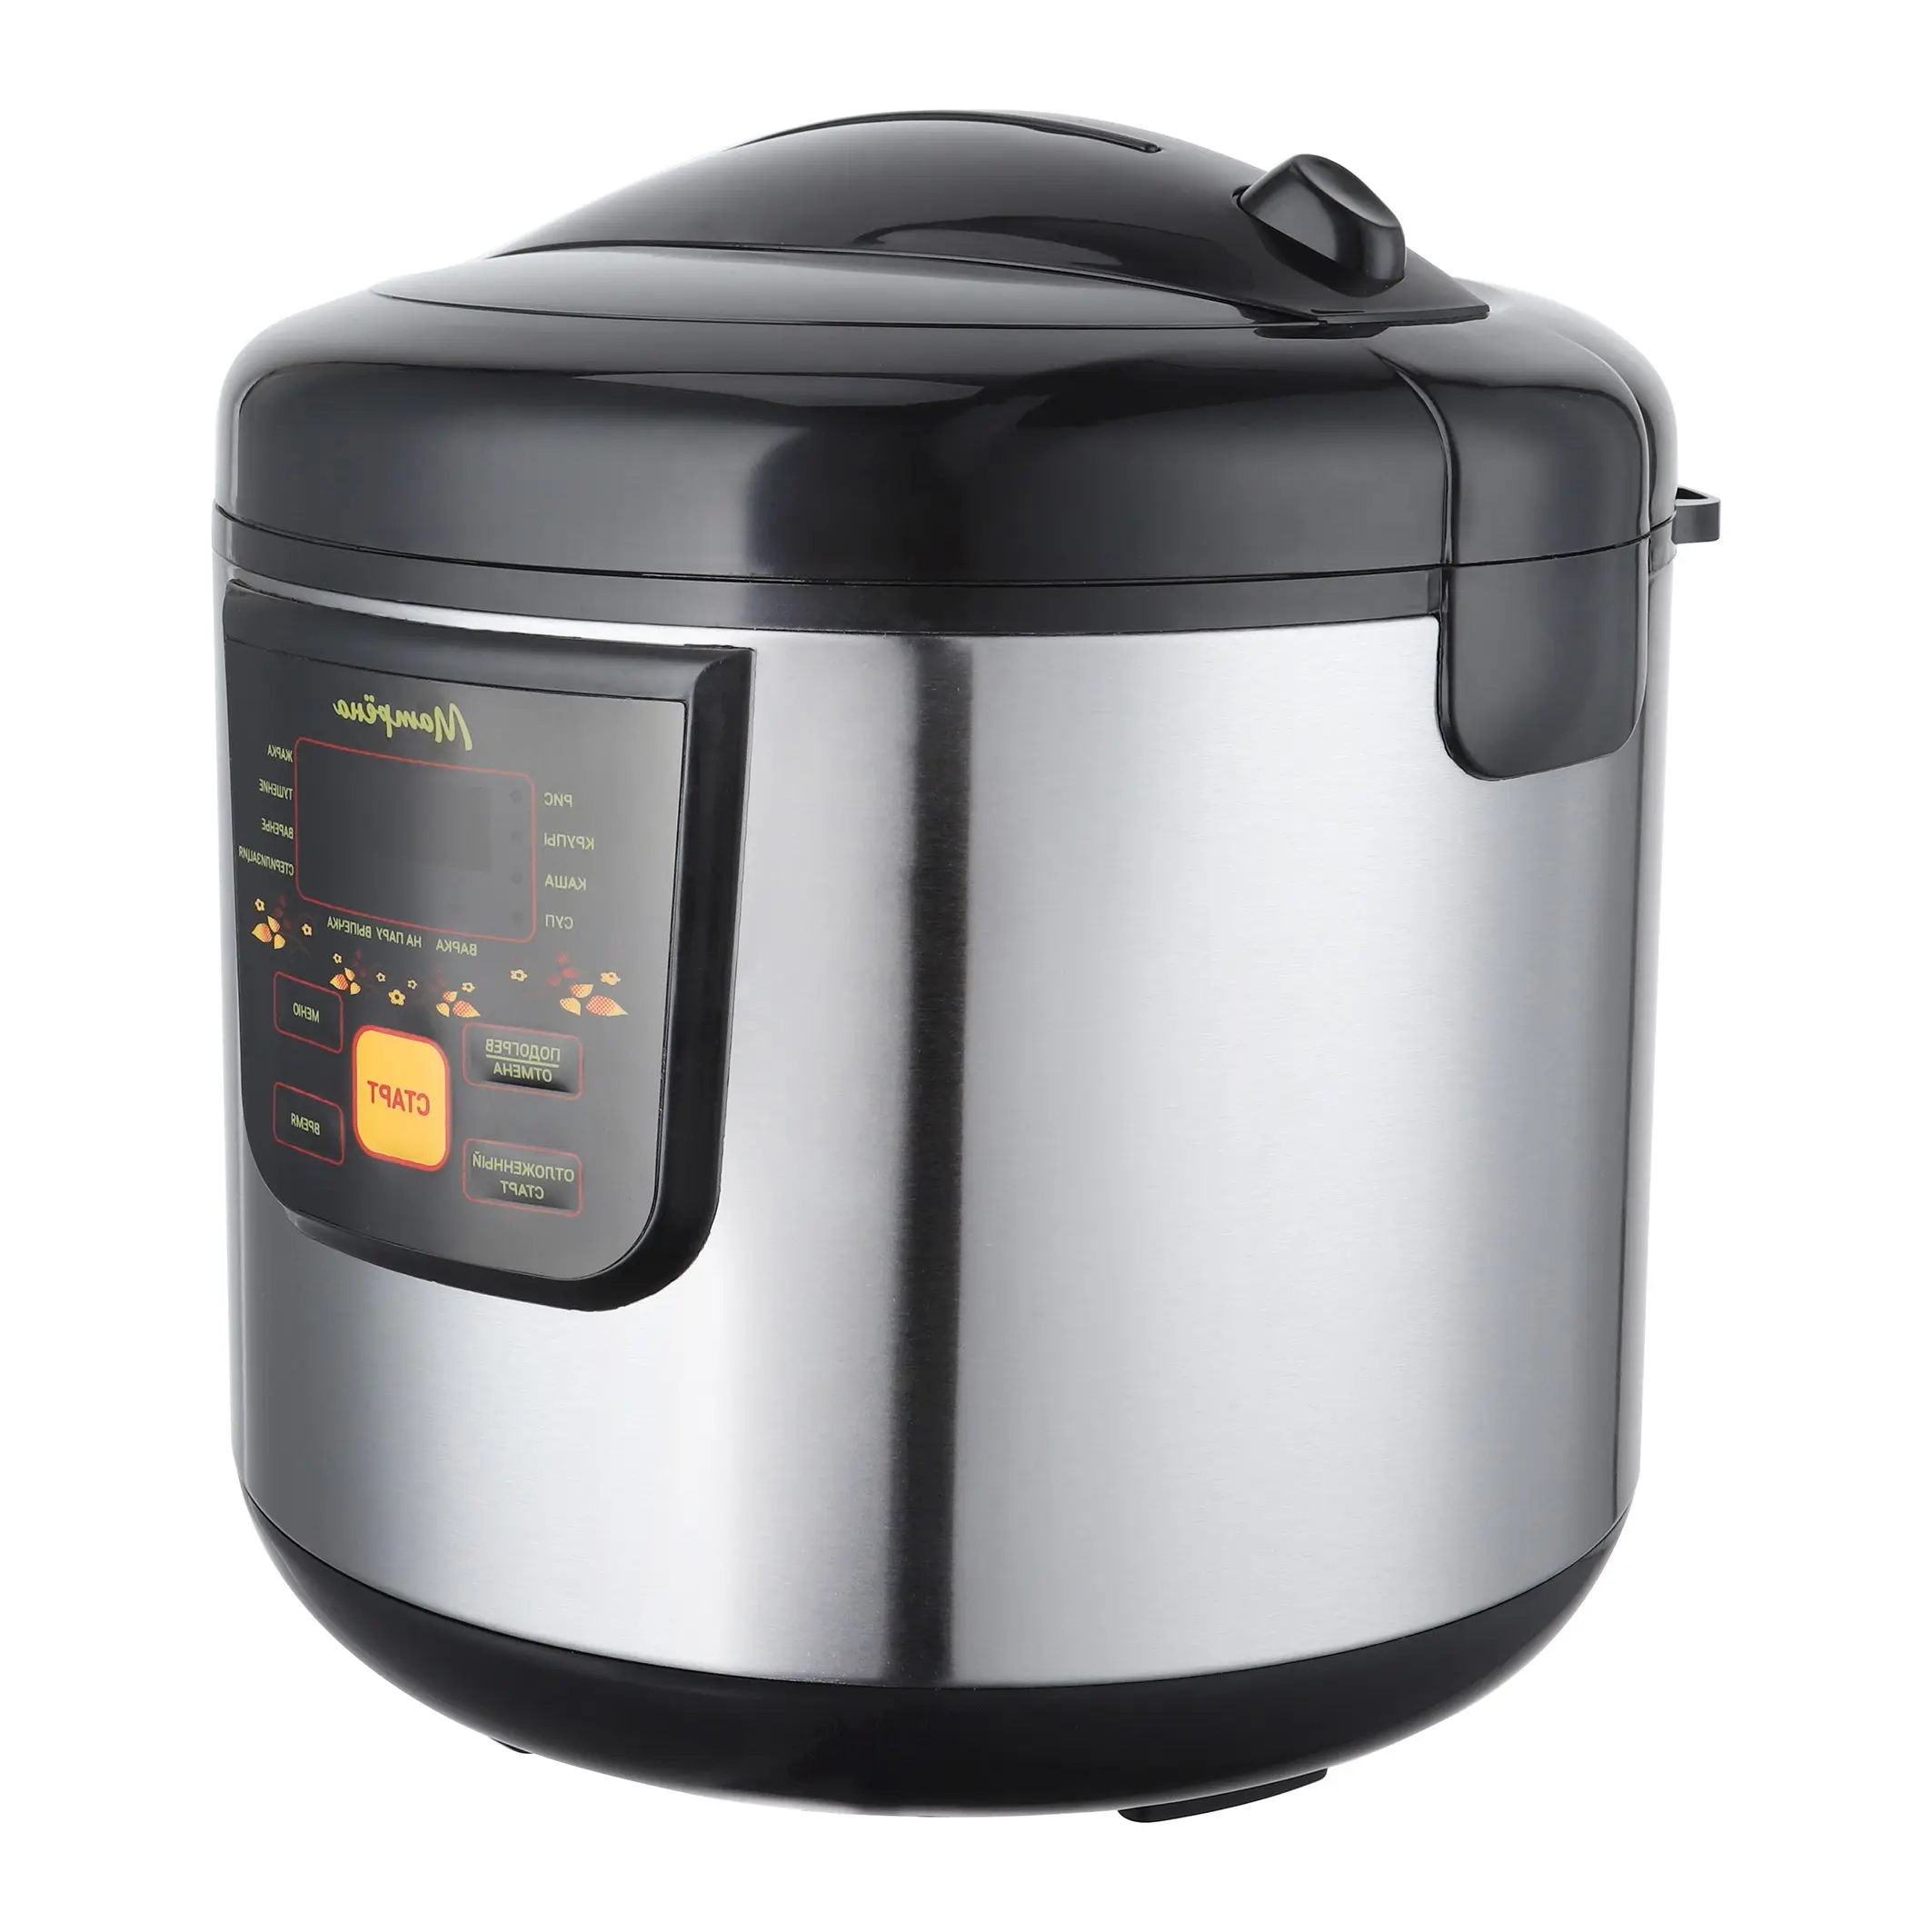 Nova venda em estoque Cylinder Rice Cooker Kitchen Home Appliance 1.8L smart Cylinder Electric Rice Cooker